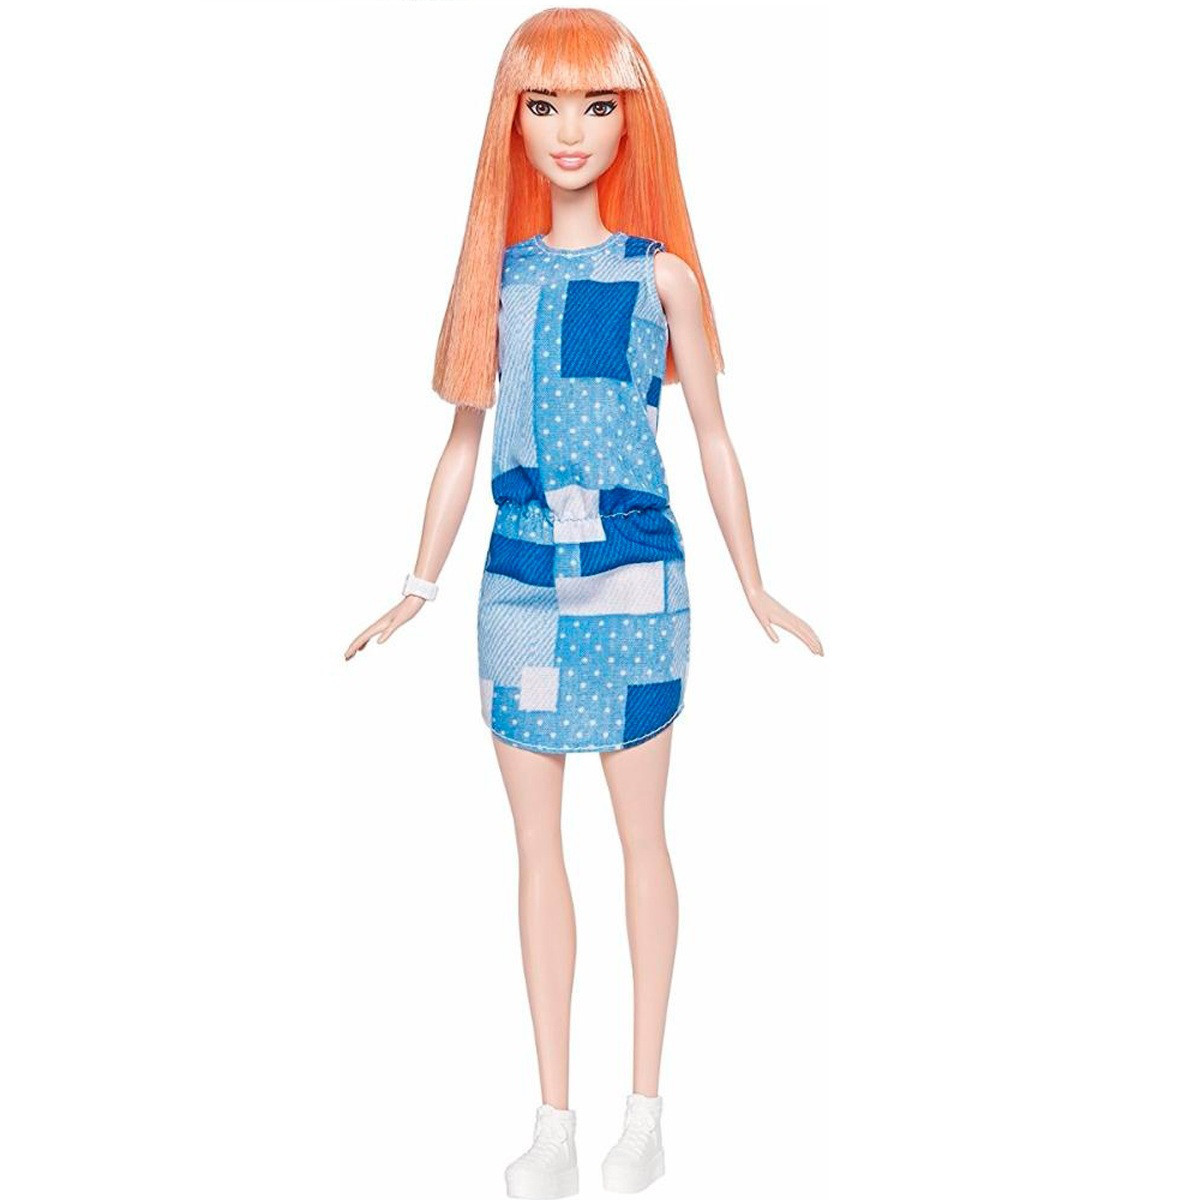 Barbie "Игра с модой" Кукла Барби - Рыжеволосая красотка #58